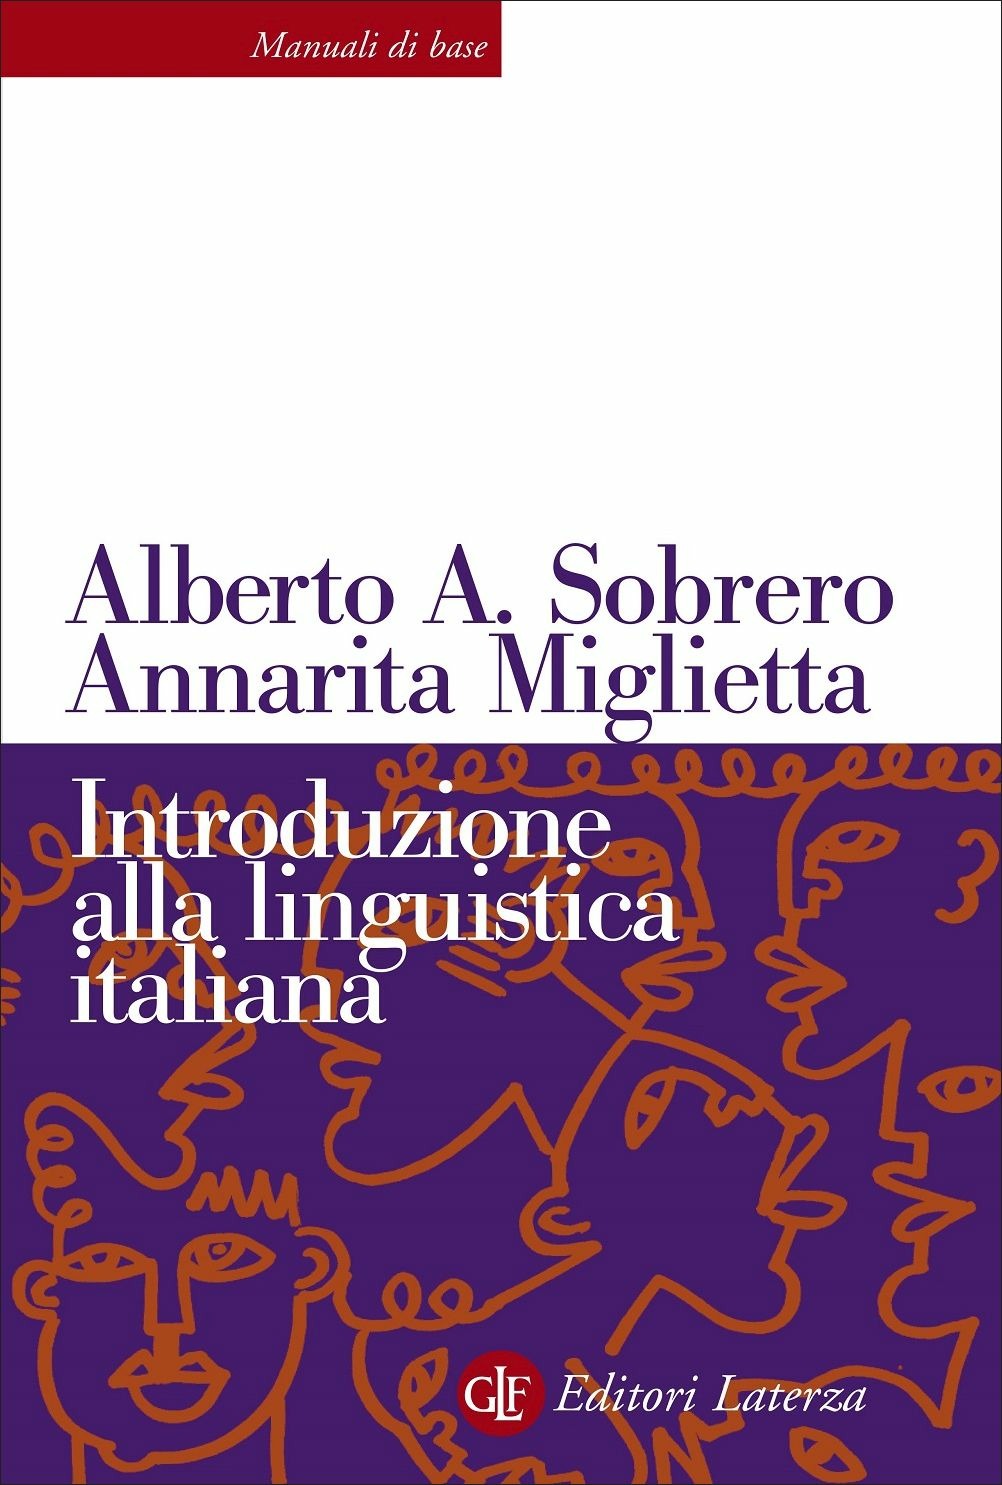 Libri Sobrero Alberto A. / Annarita Miglietta - Introduzione Alla Linguistica Italiana. Nuova Ediz. NUOVO SIGILLATO, EDIZIONE DEL 09/09/2021 SUBITO DISPONIBILE